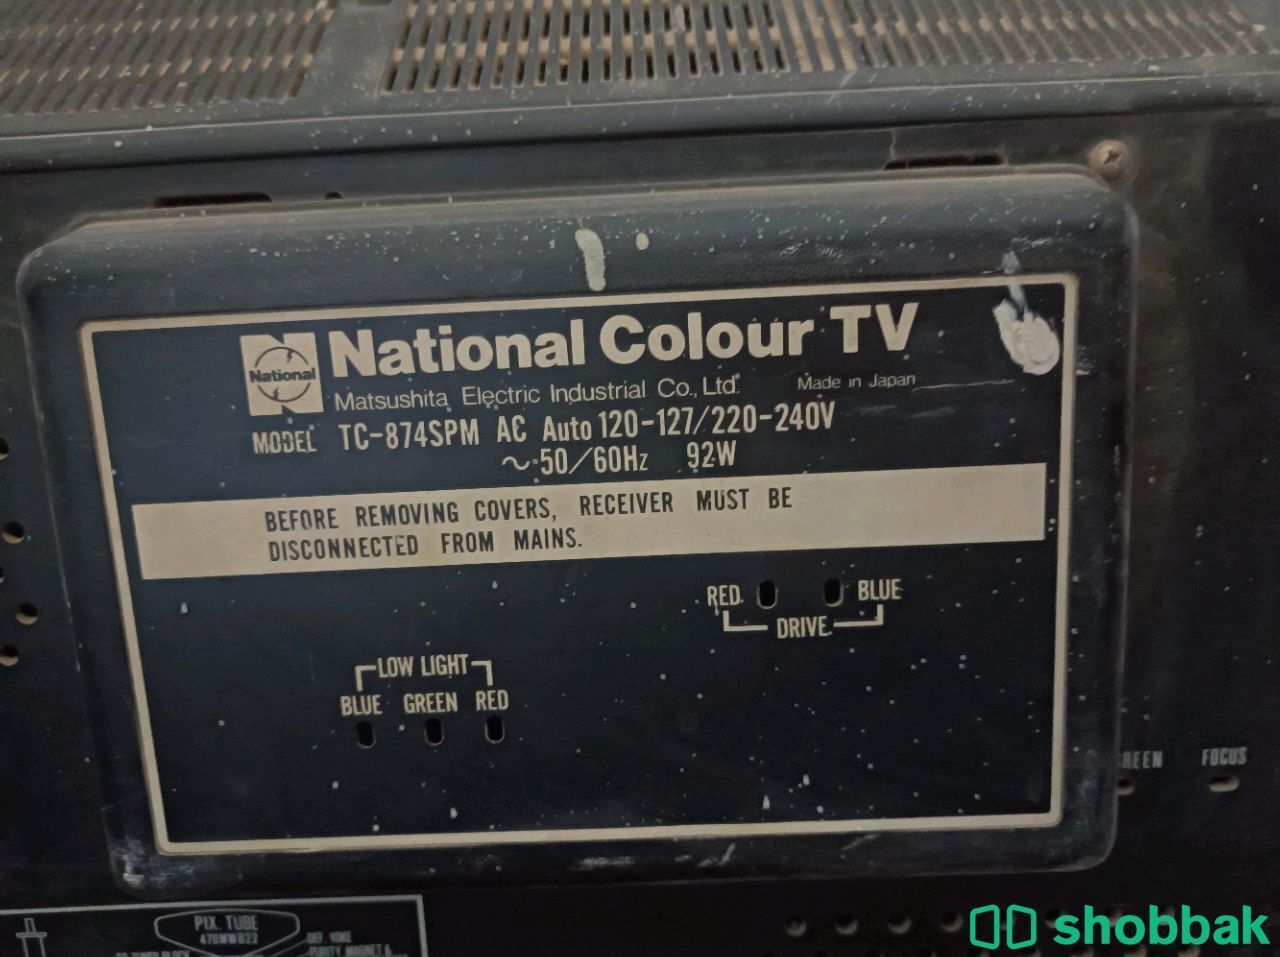 تلفزيون قديم تراثي، Old antique tv  شباك السعودية